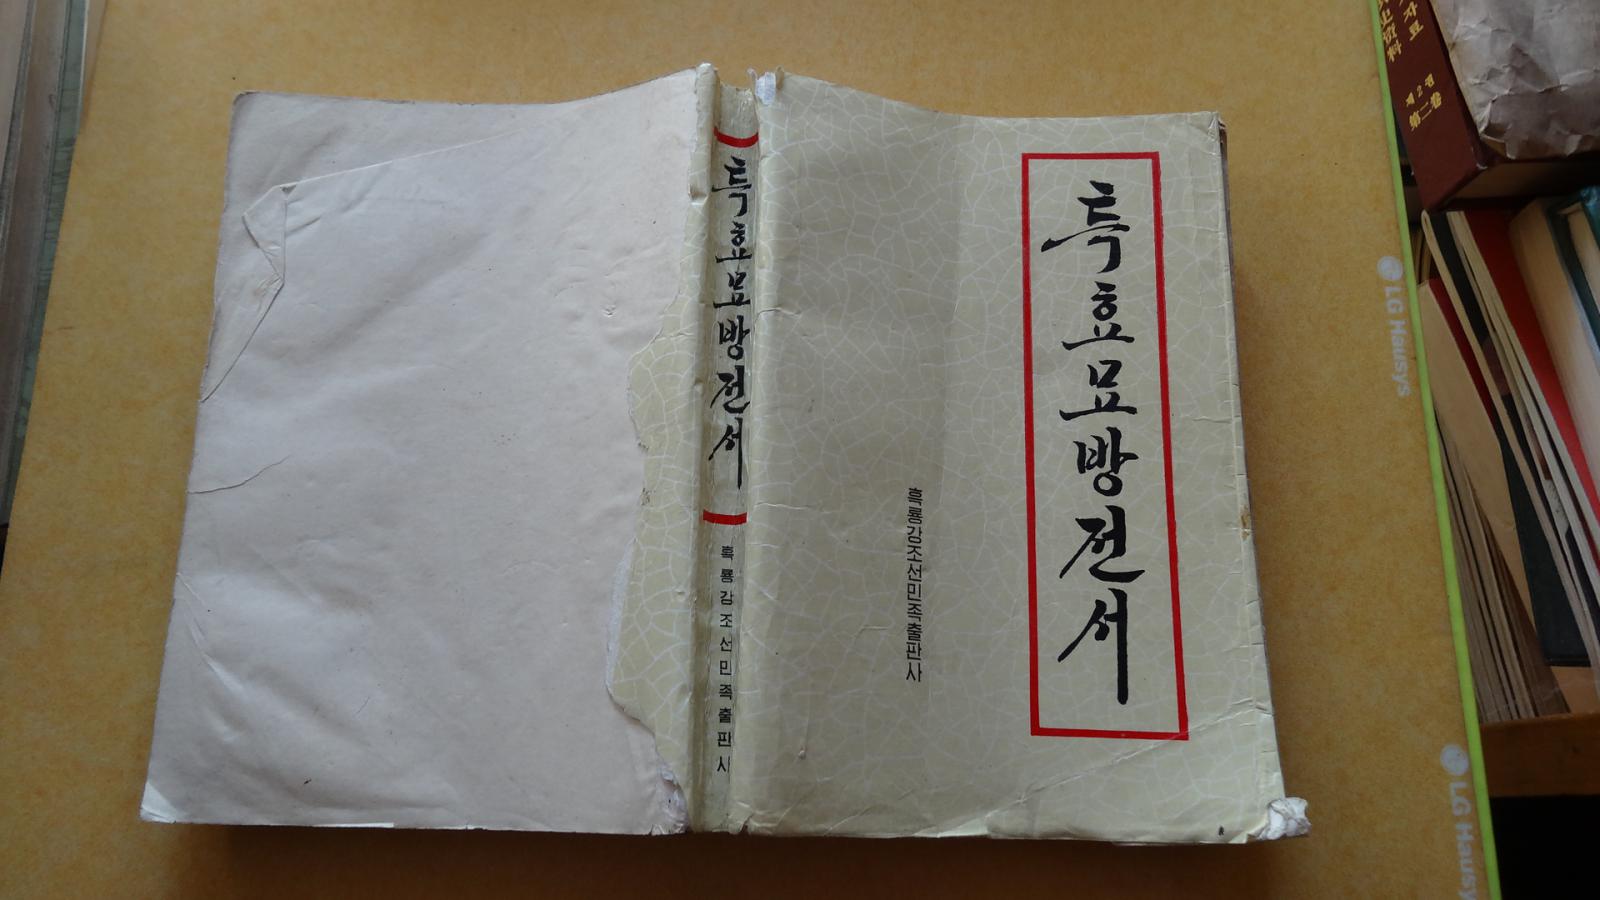 特效妙方全书 특효묘방전서    朝鲜文      包邮挂